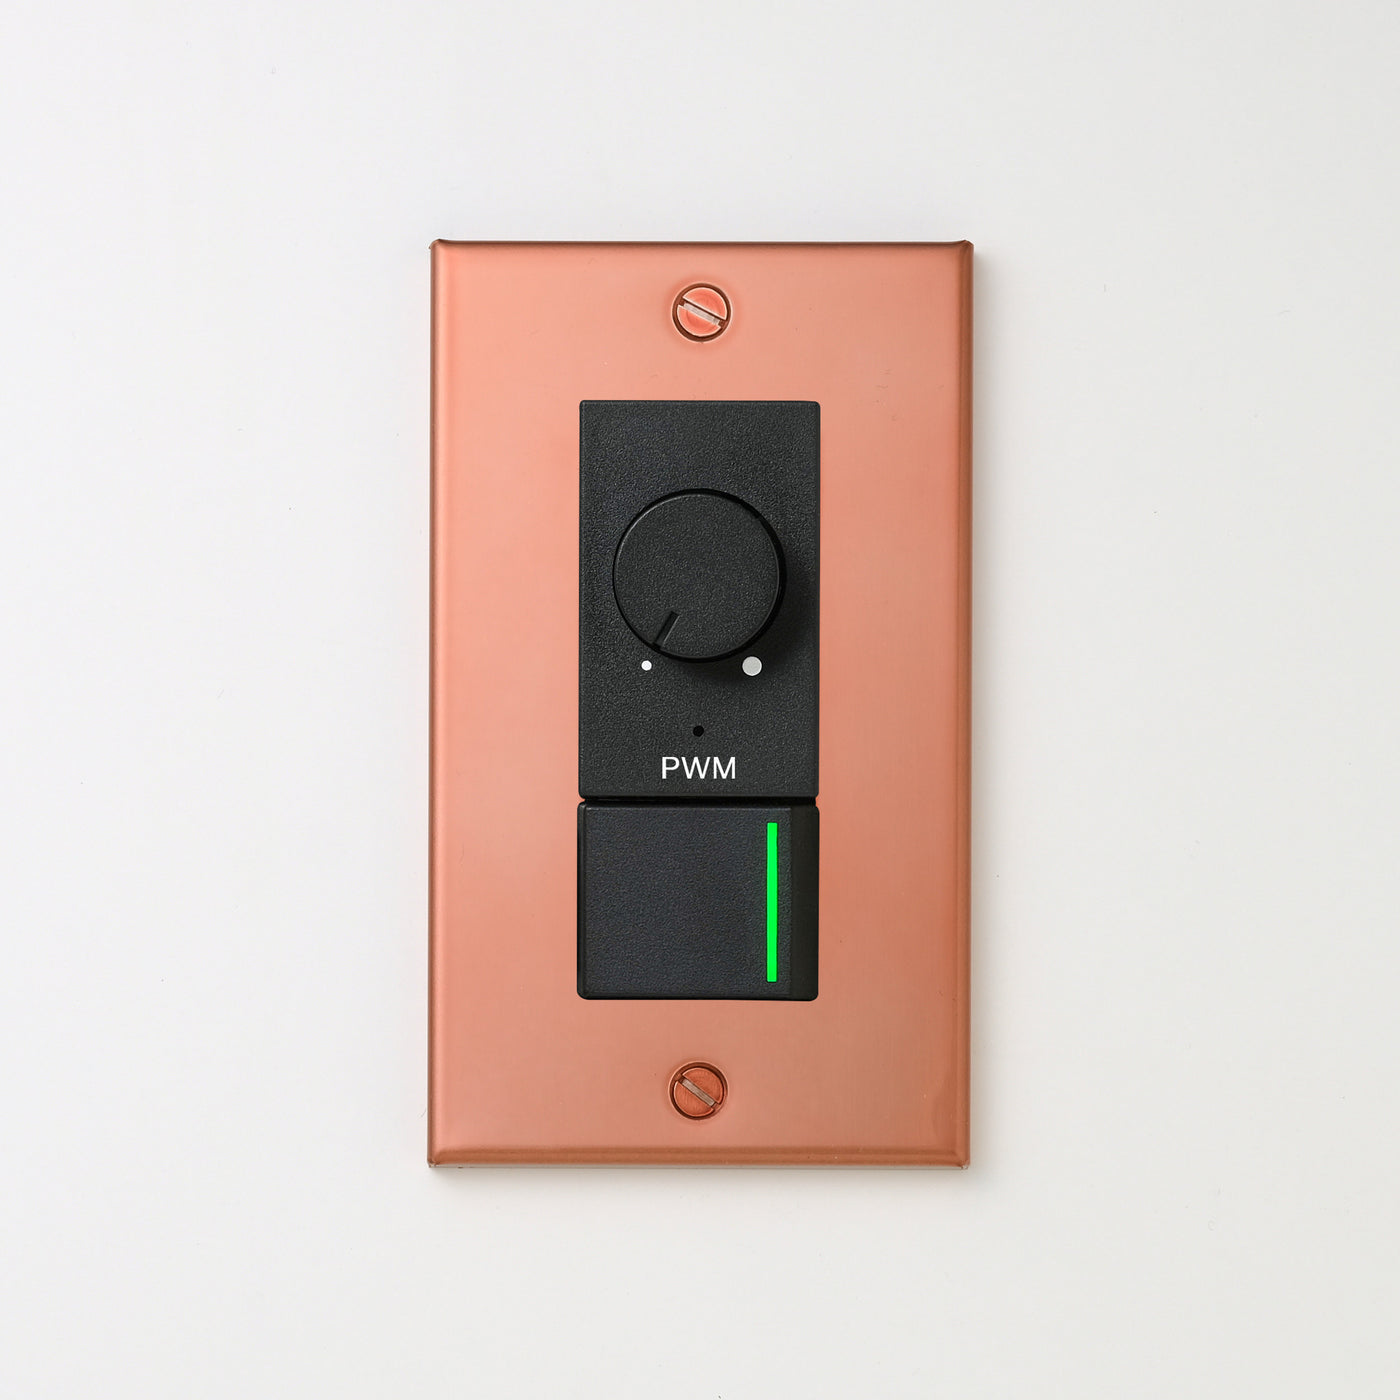 銅色（マット） プレート <br>+ NK PWM制御方式(1ch)ライトコントロール＋片切、3路ガイドランプ（グリーン）スイッチ　 ブラック